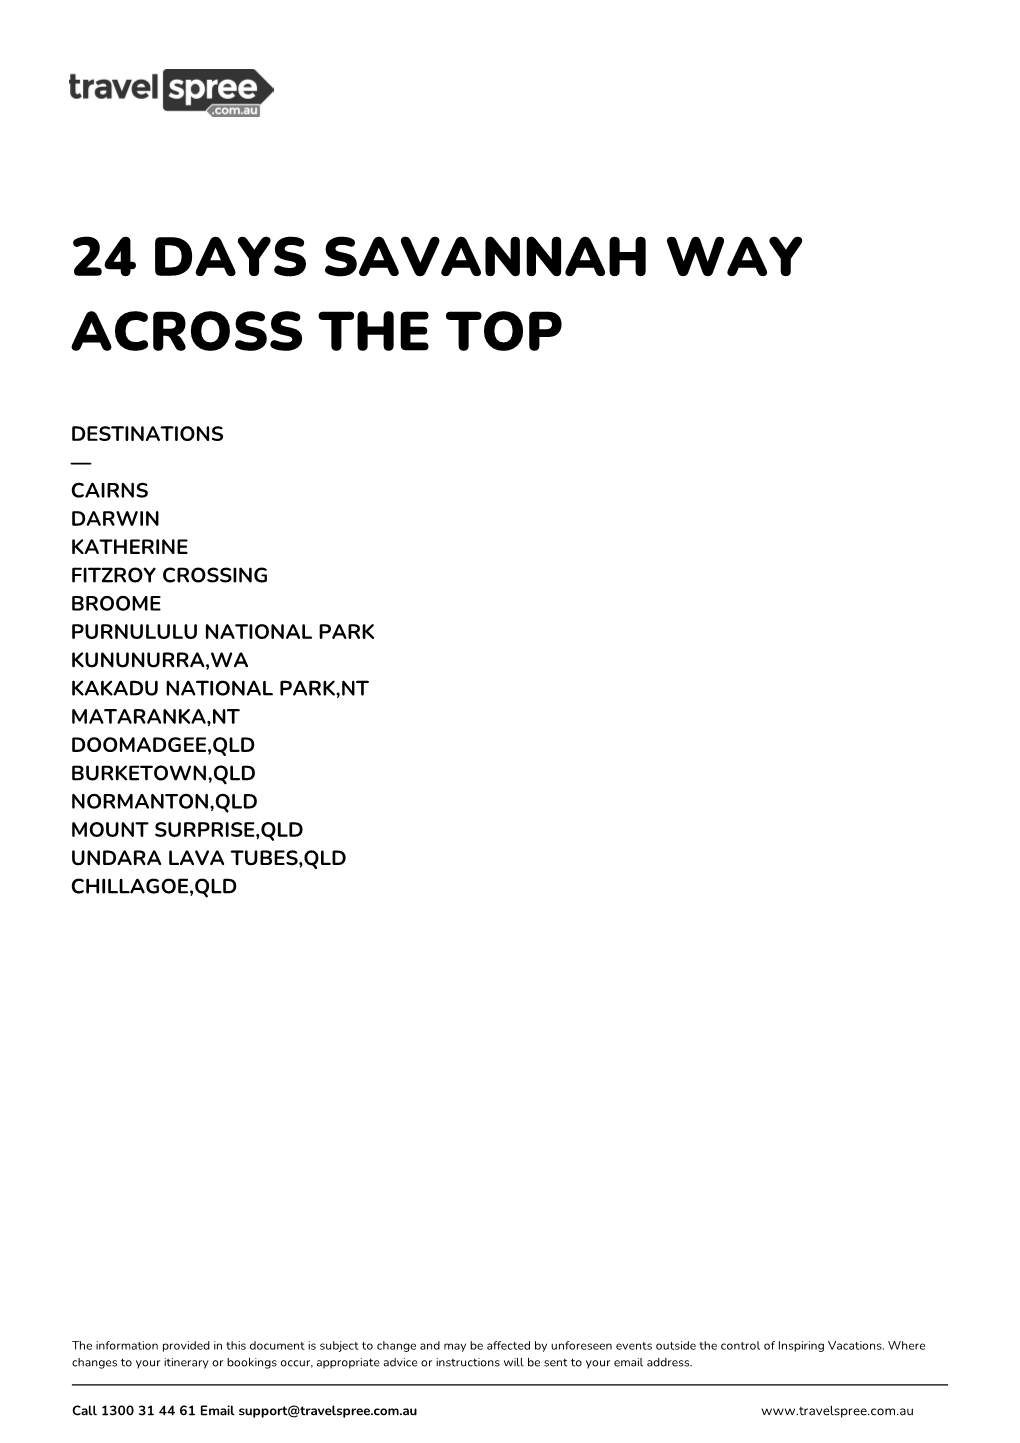 24 Days Savannah Way Across the Top